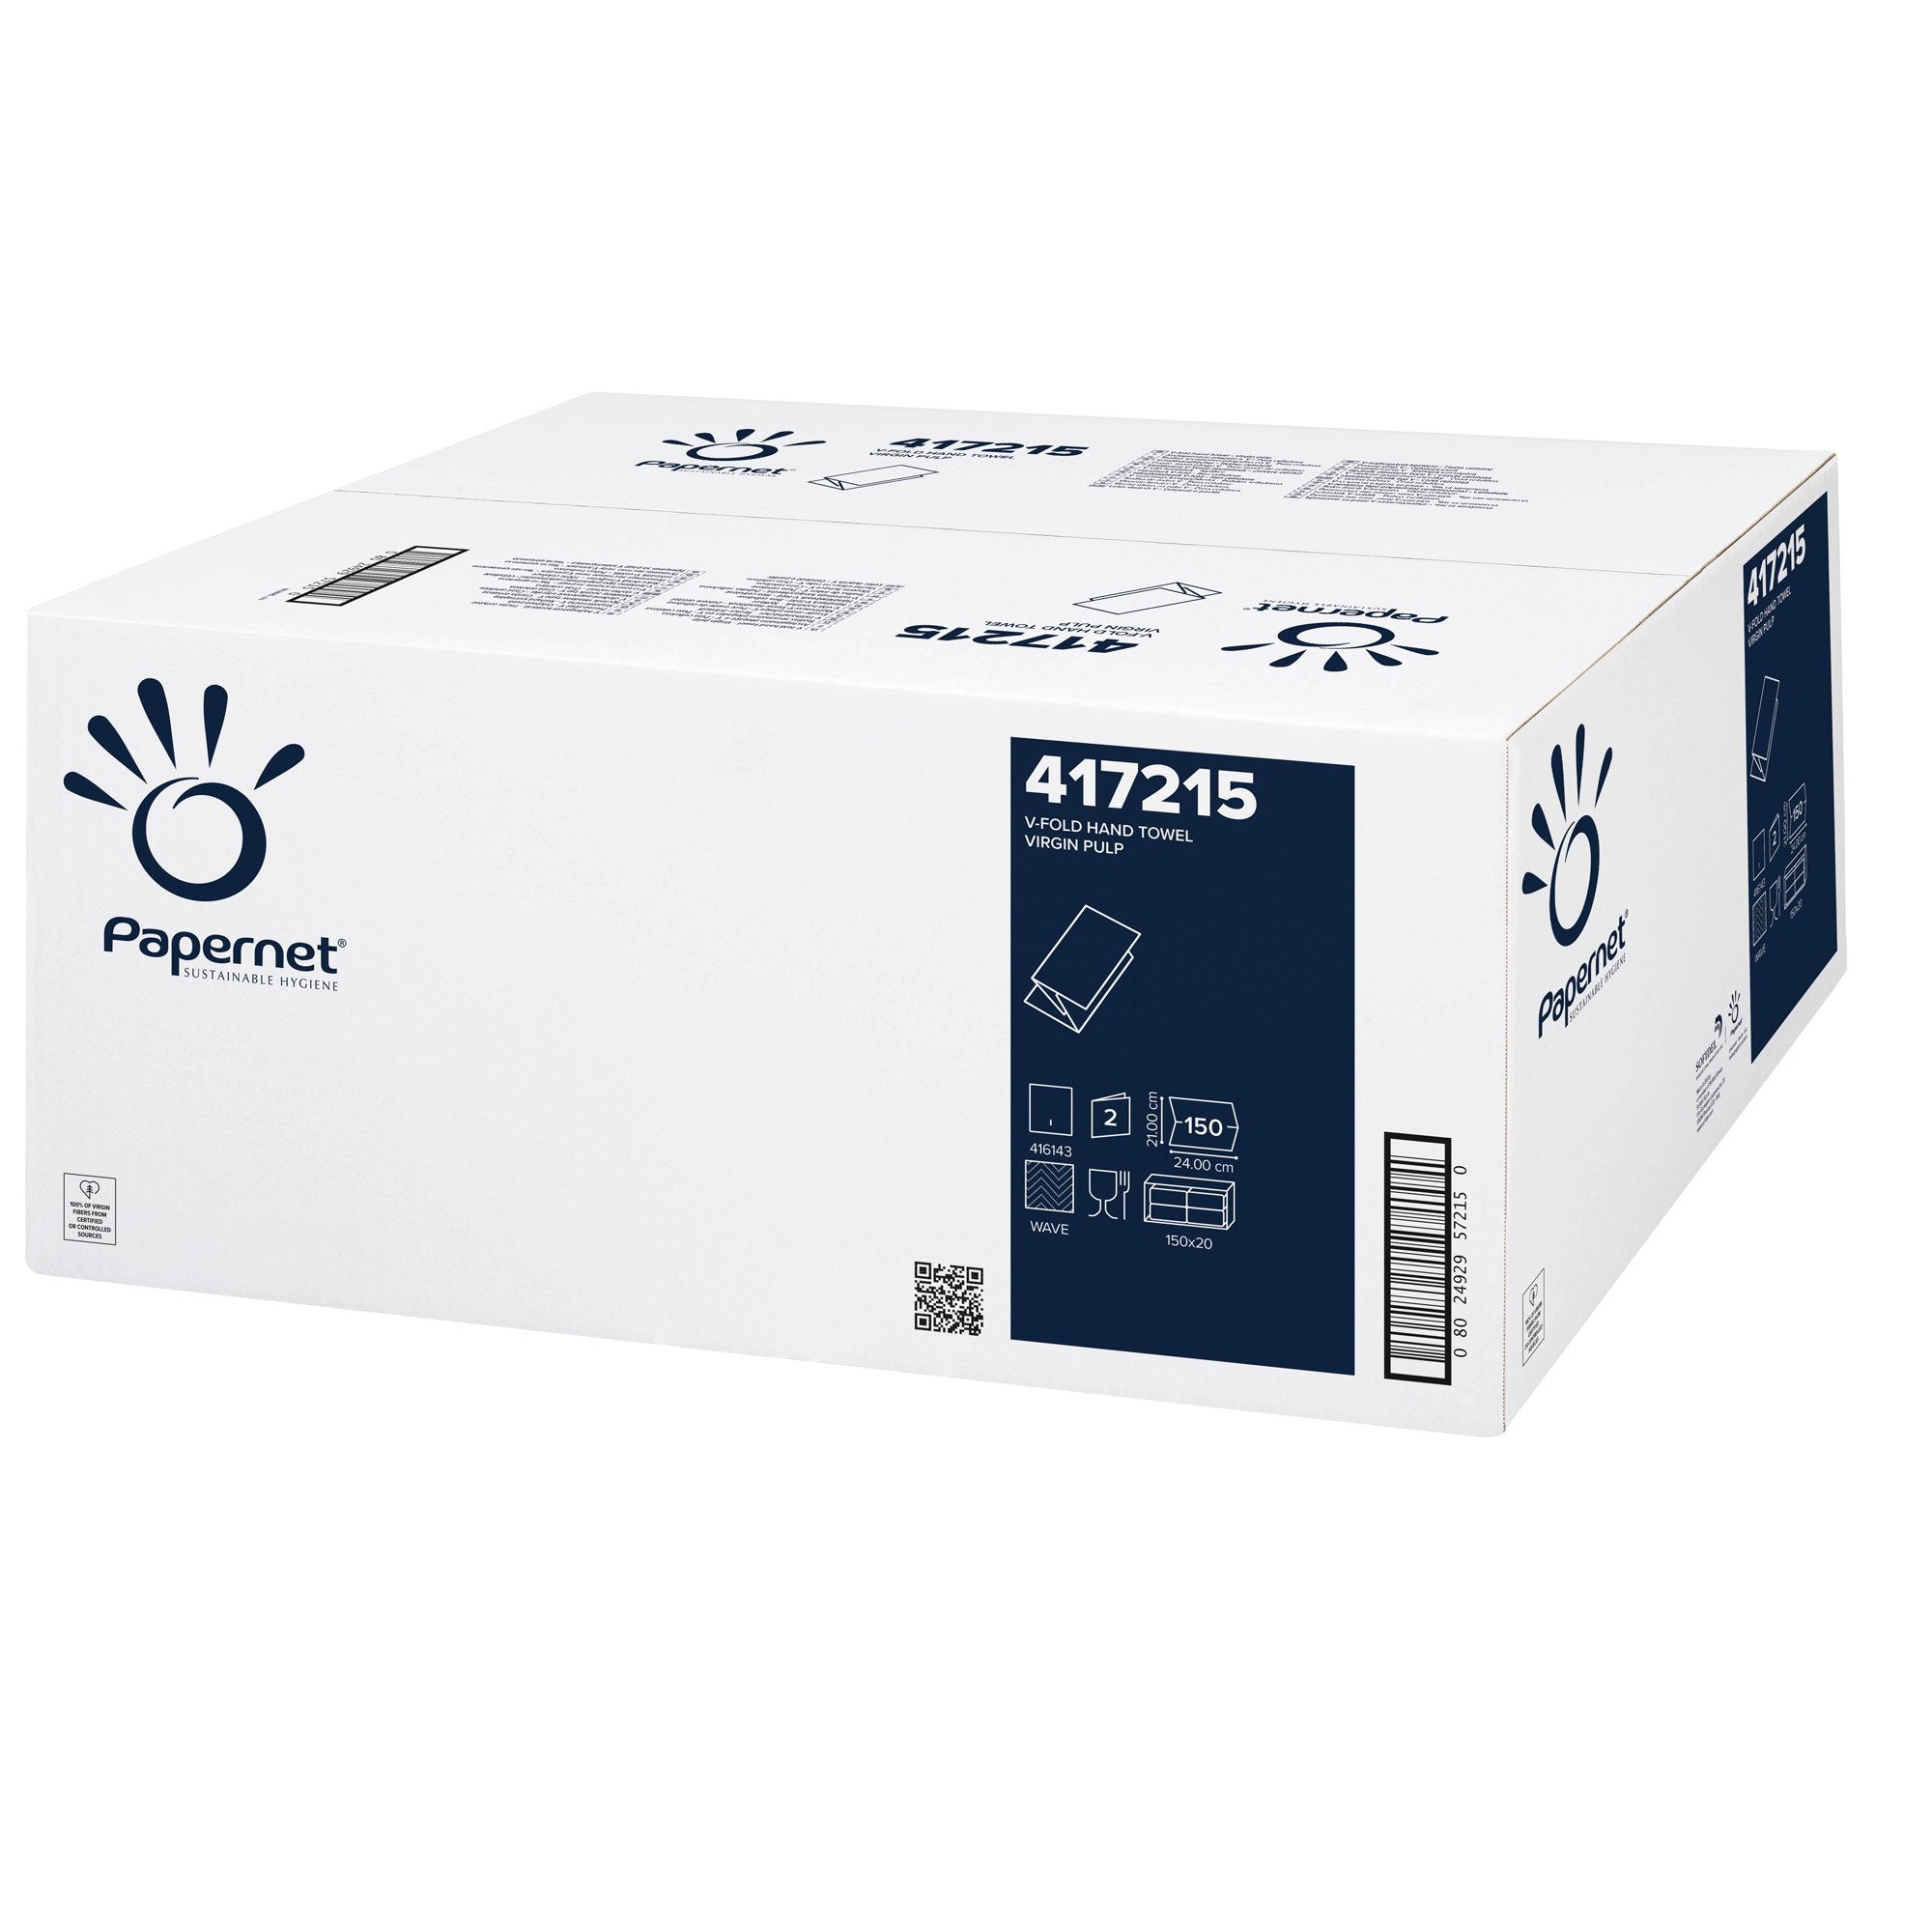 papernet-pacco-150-asciugamani-piegati-v-goffrato-onda